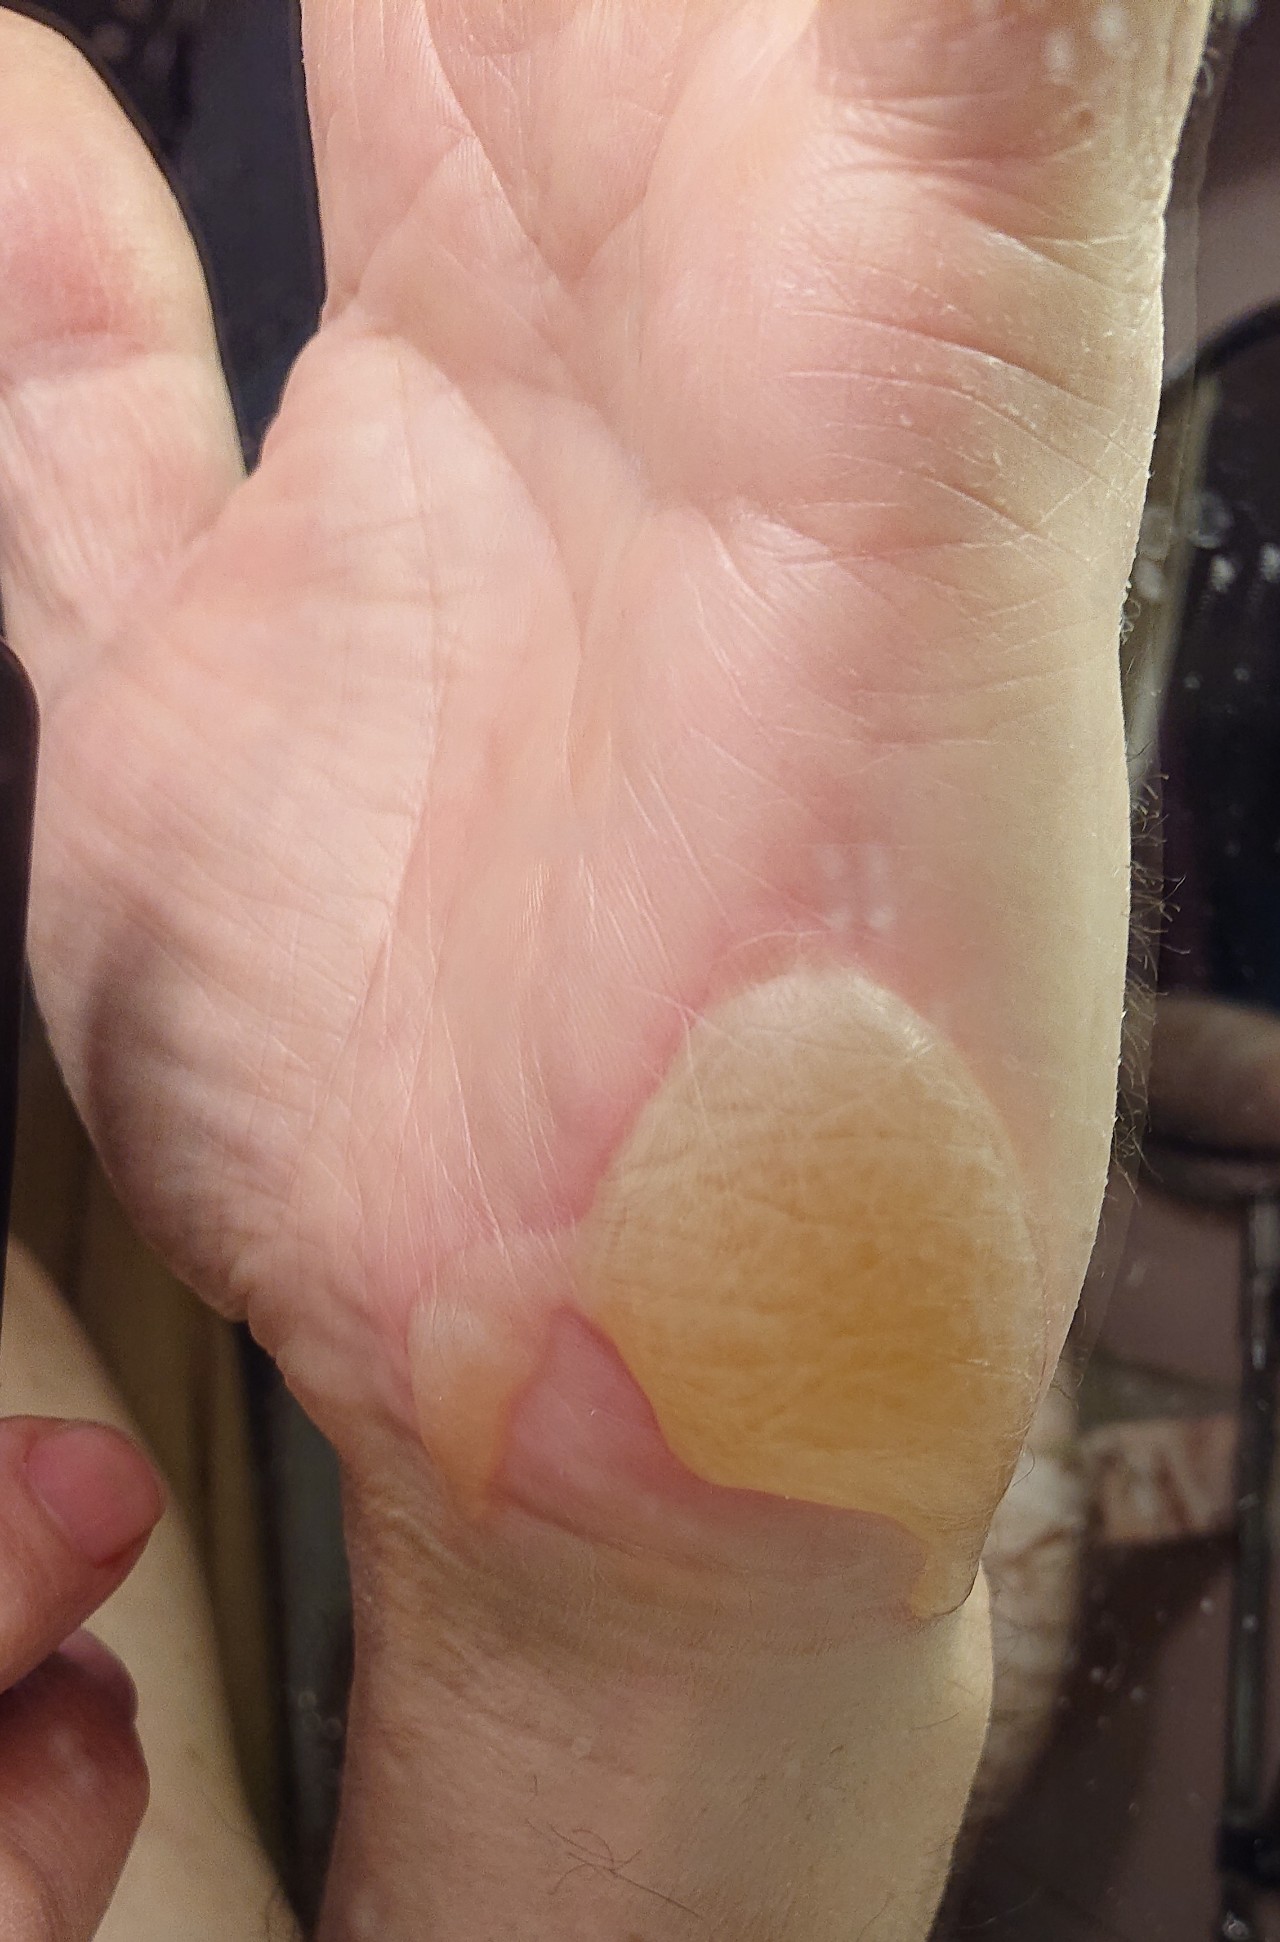 Химический ожог на пальцах рук фото